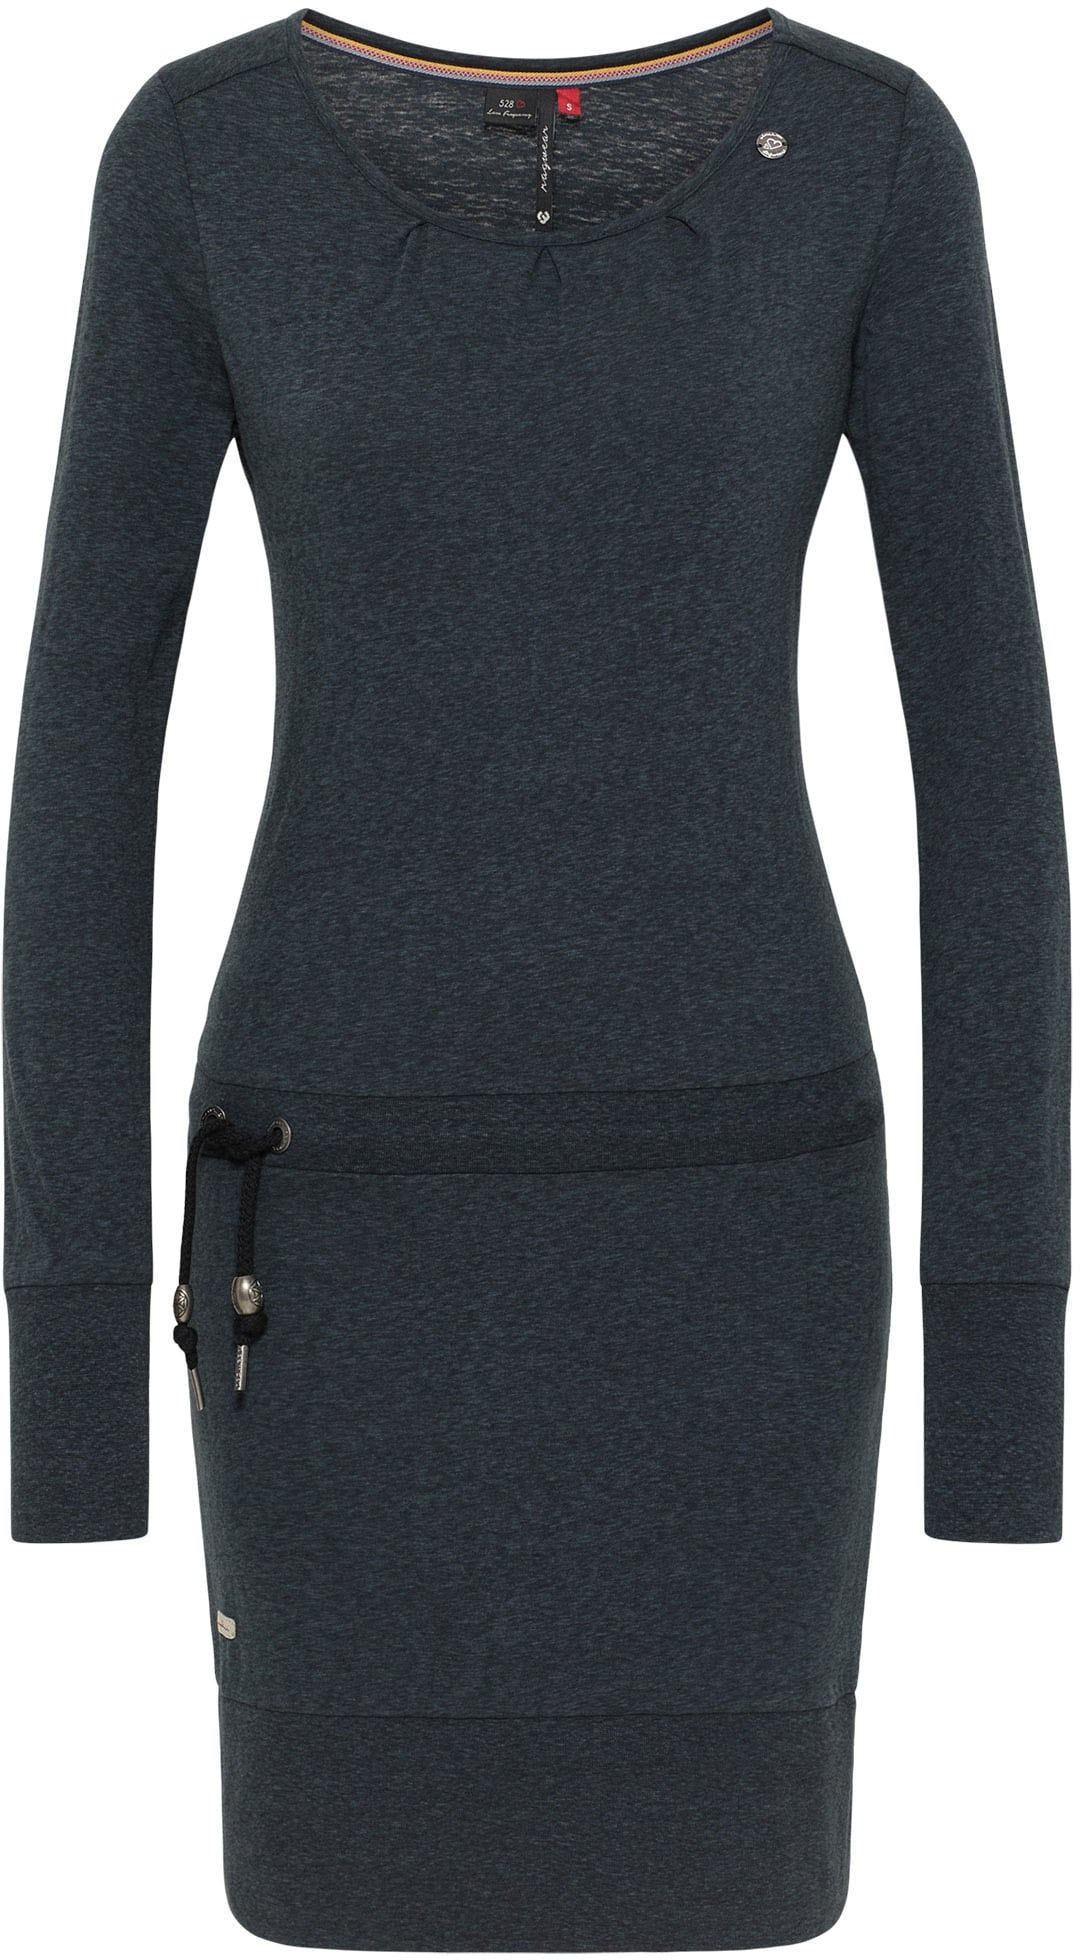 Ragwear Jerseykleid »ALEXA«, online mit Zierperlen- und Kordelzug Besatz kontrastigen kaufen